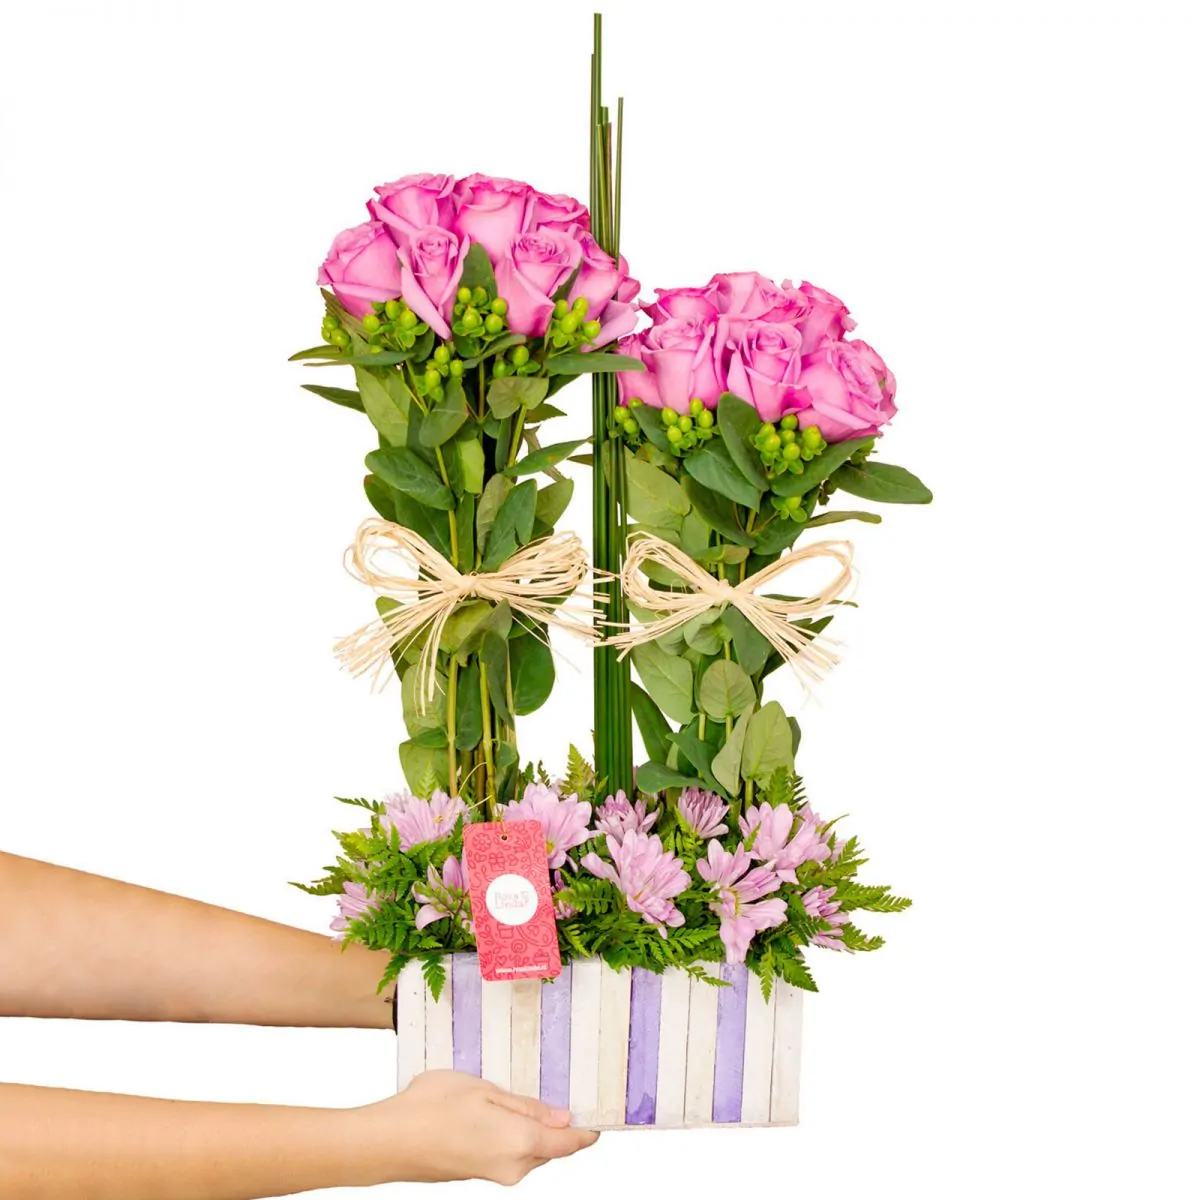 Foto principal Fantasí­a Lila - Arreglo floral en base de madera con rosas lilas, maules, hypericum y varas de junquillo